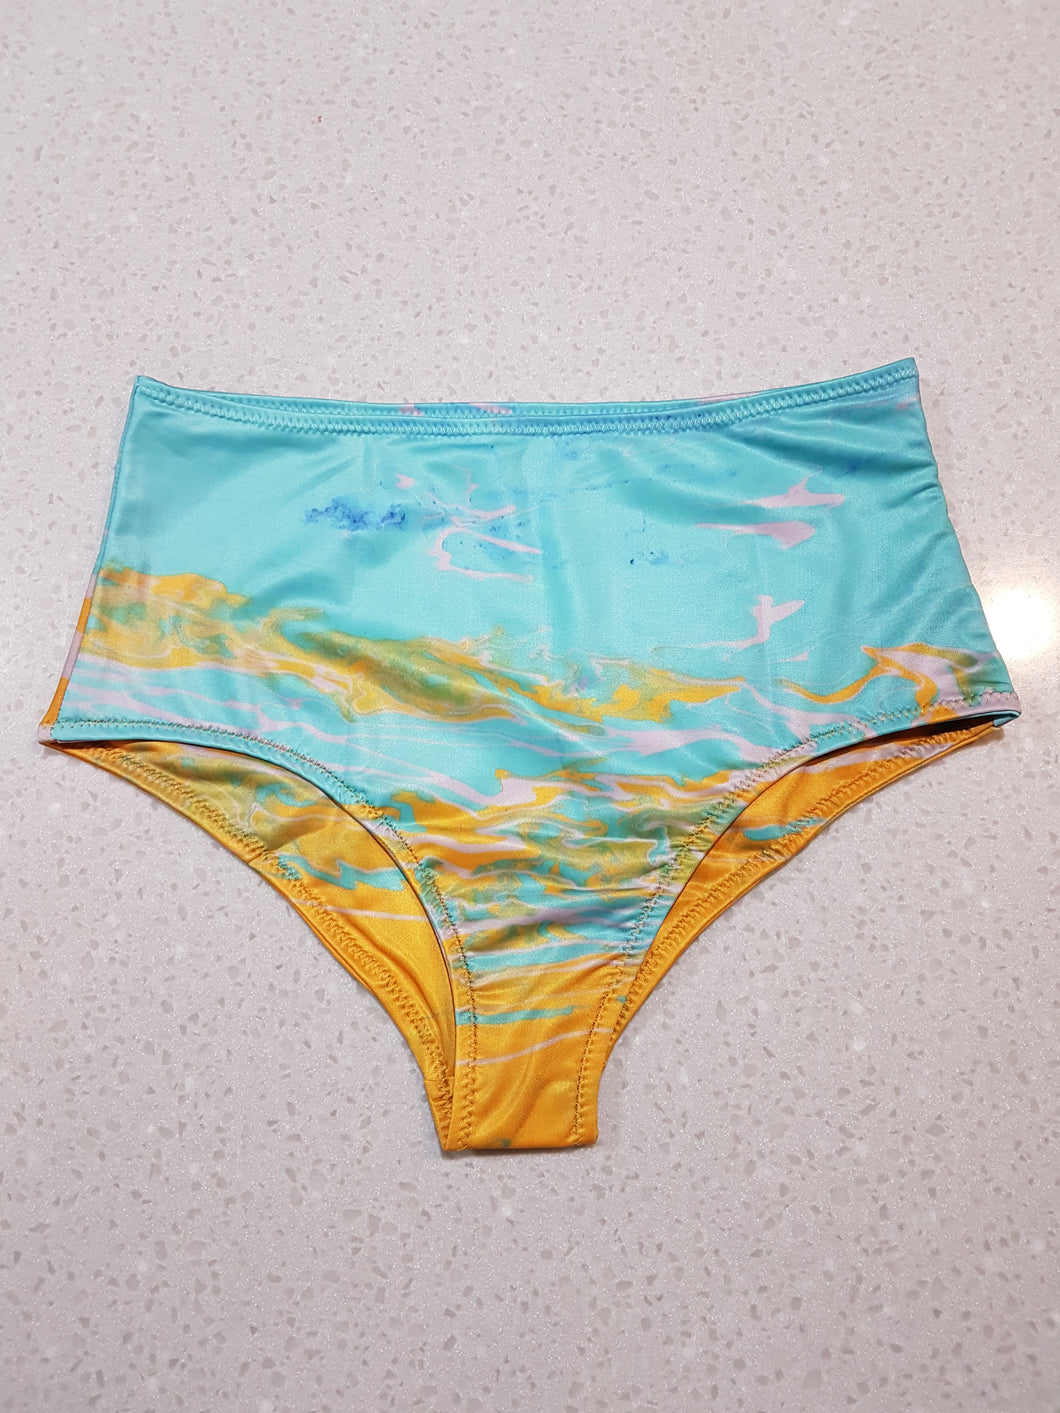 Neptune's Beach High Waist Bikini Bottom